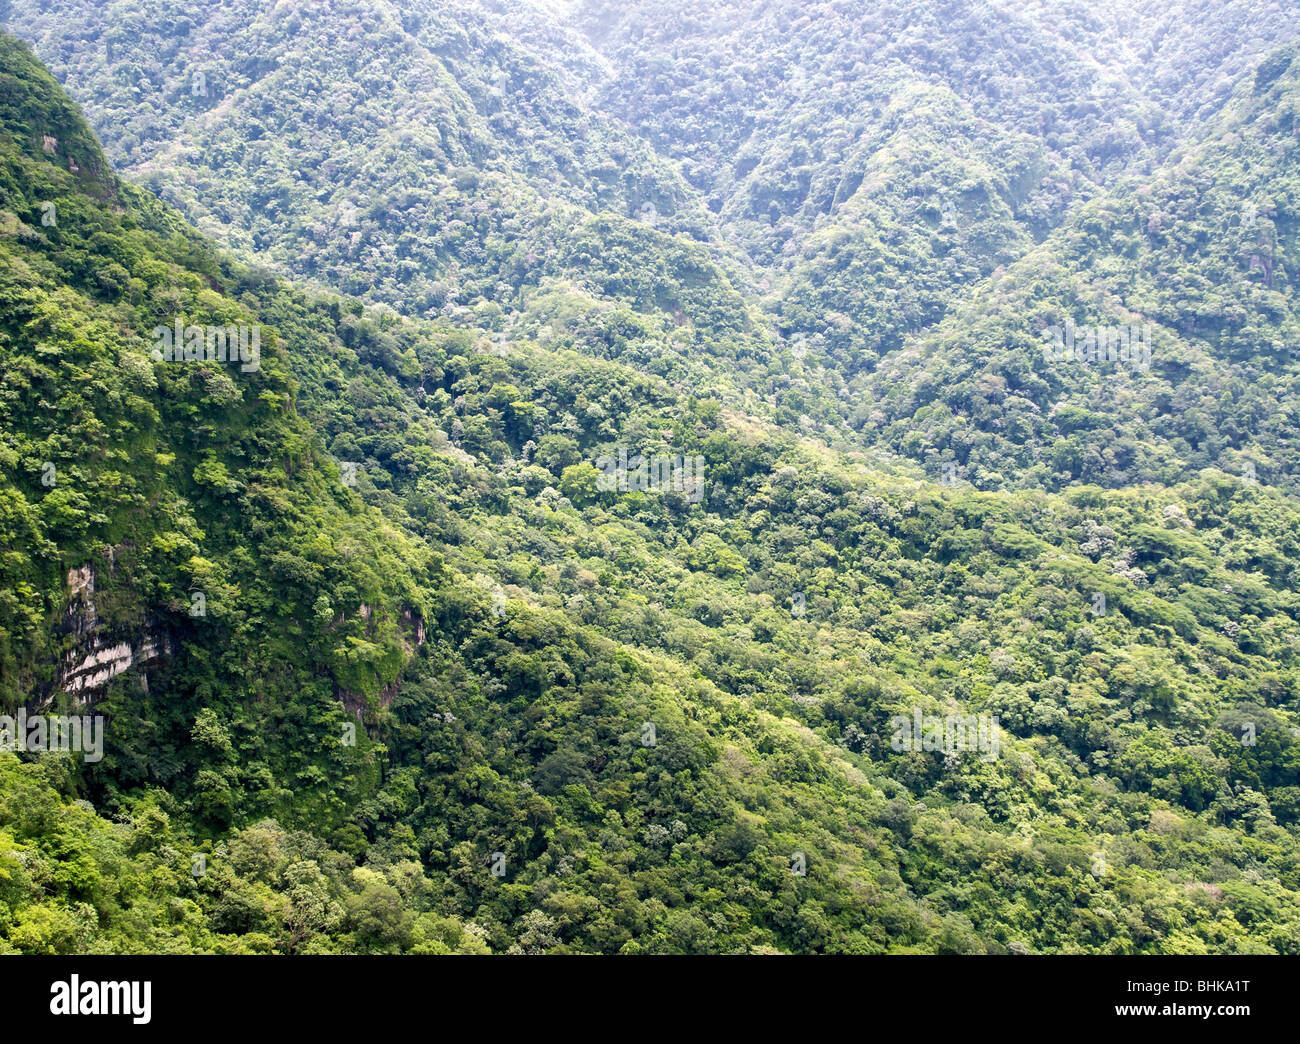 El Salvador Mountains